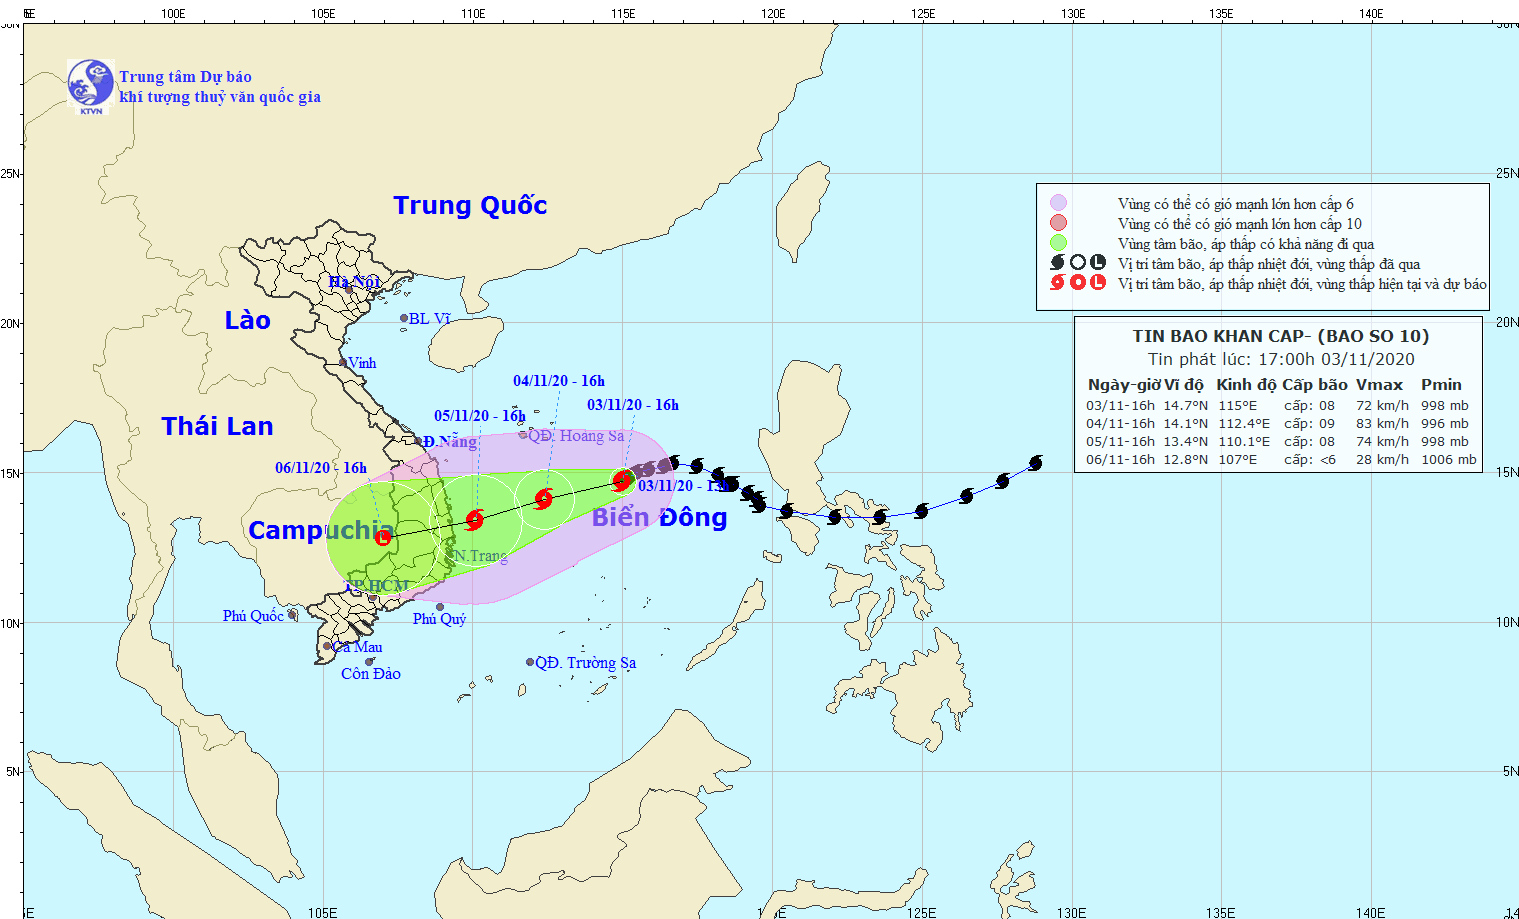 Dự báo thời tiết: Tin bão khẩn cấp, đến 16h ngày 5/11, bão số 10 ngay trên vùng biển từ Quảng Ngãi đến Khánh Hòa